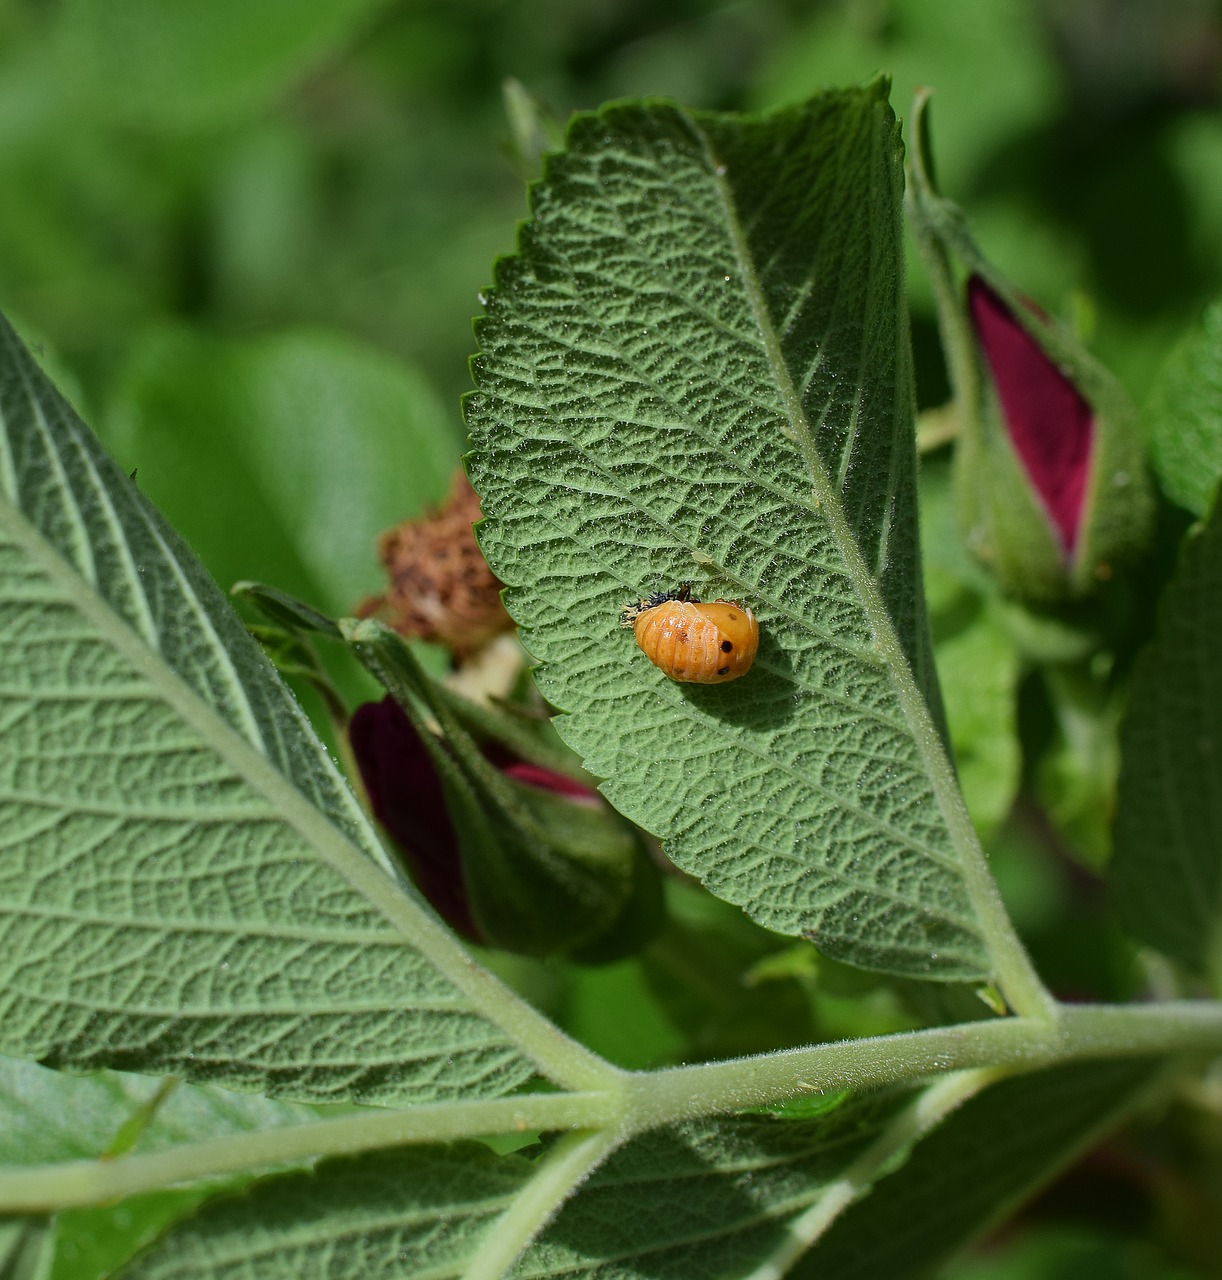 ladybug pupa leaf underside close-up free photo